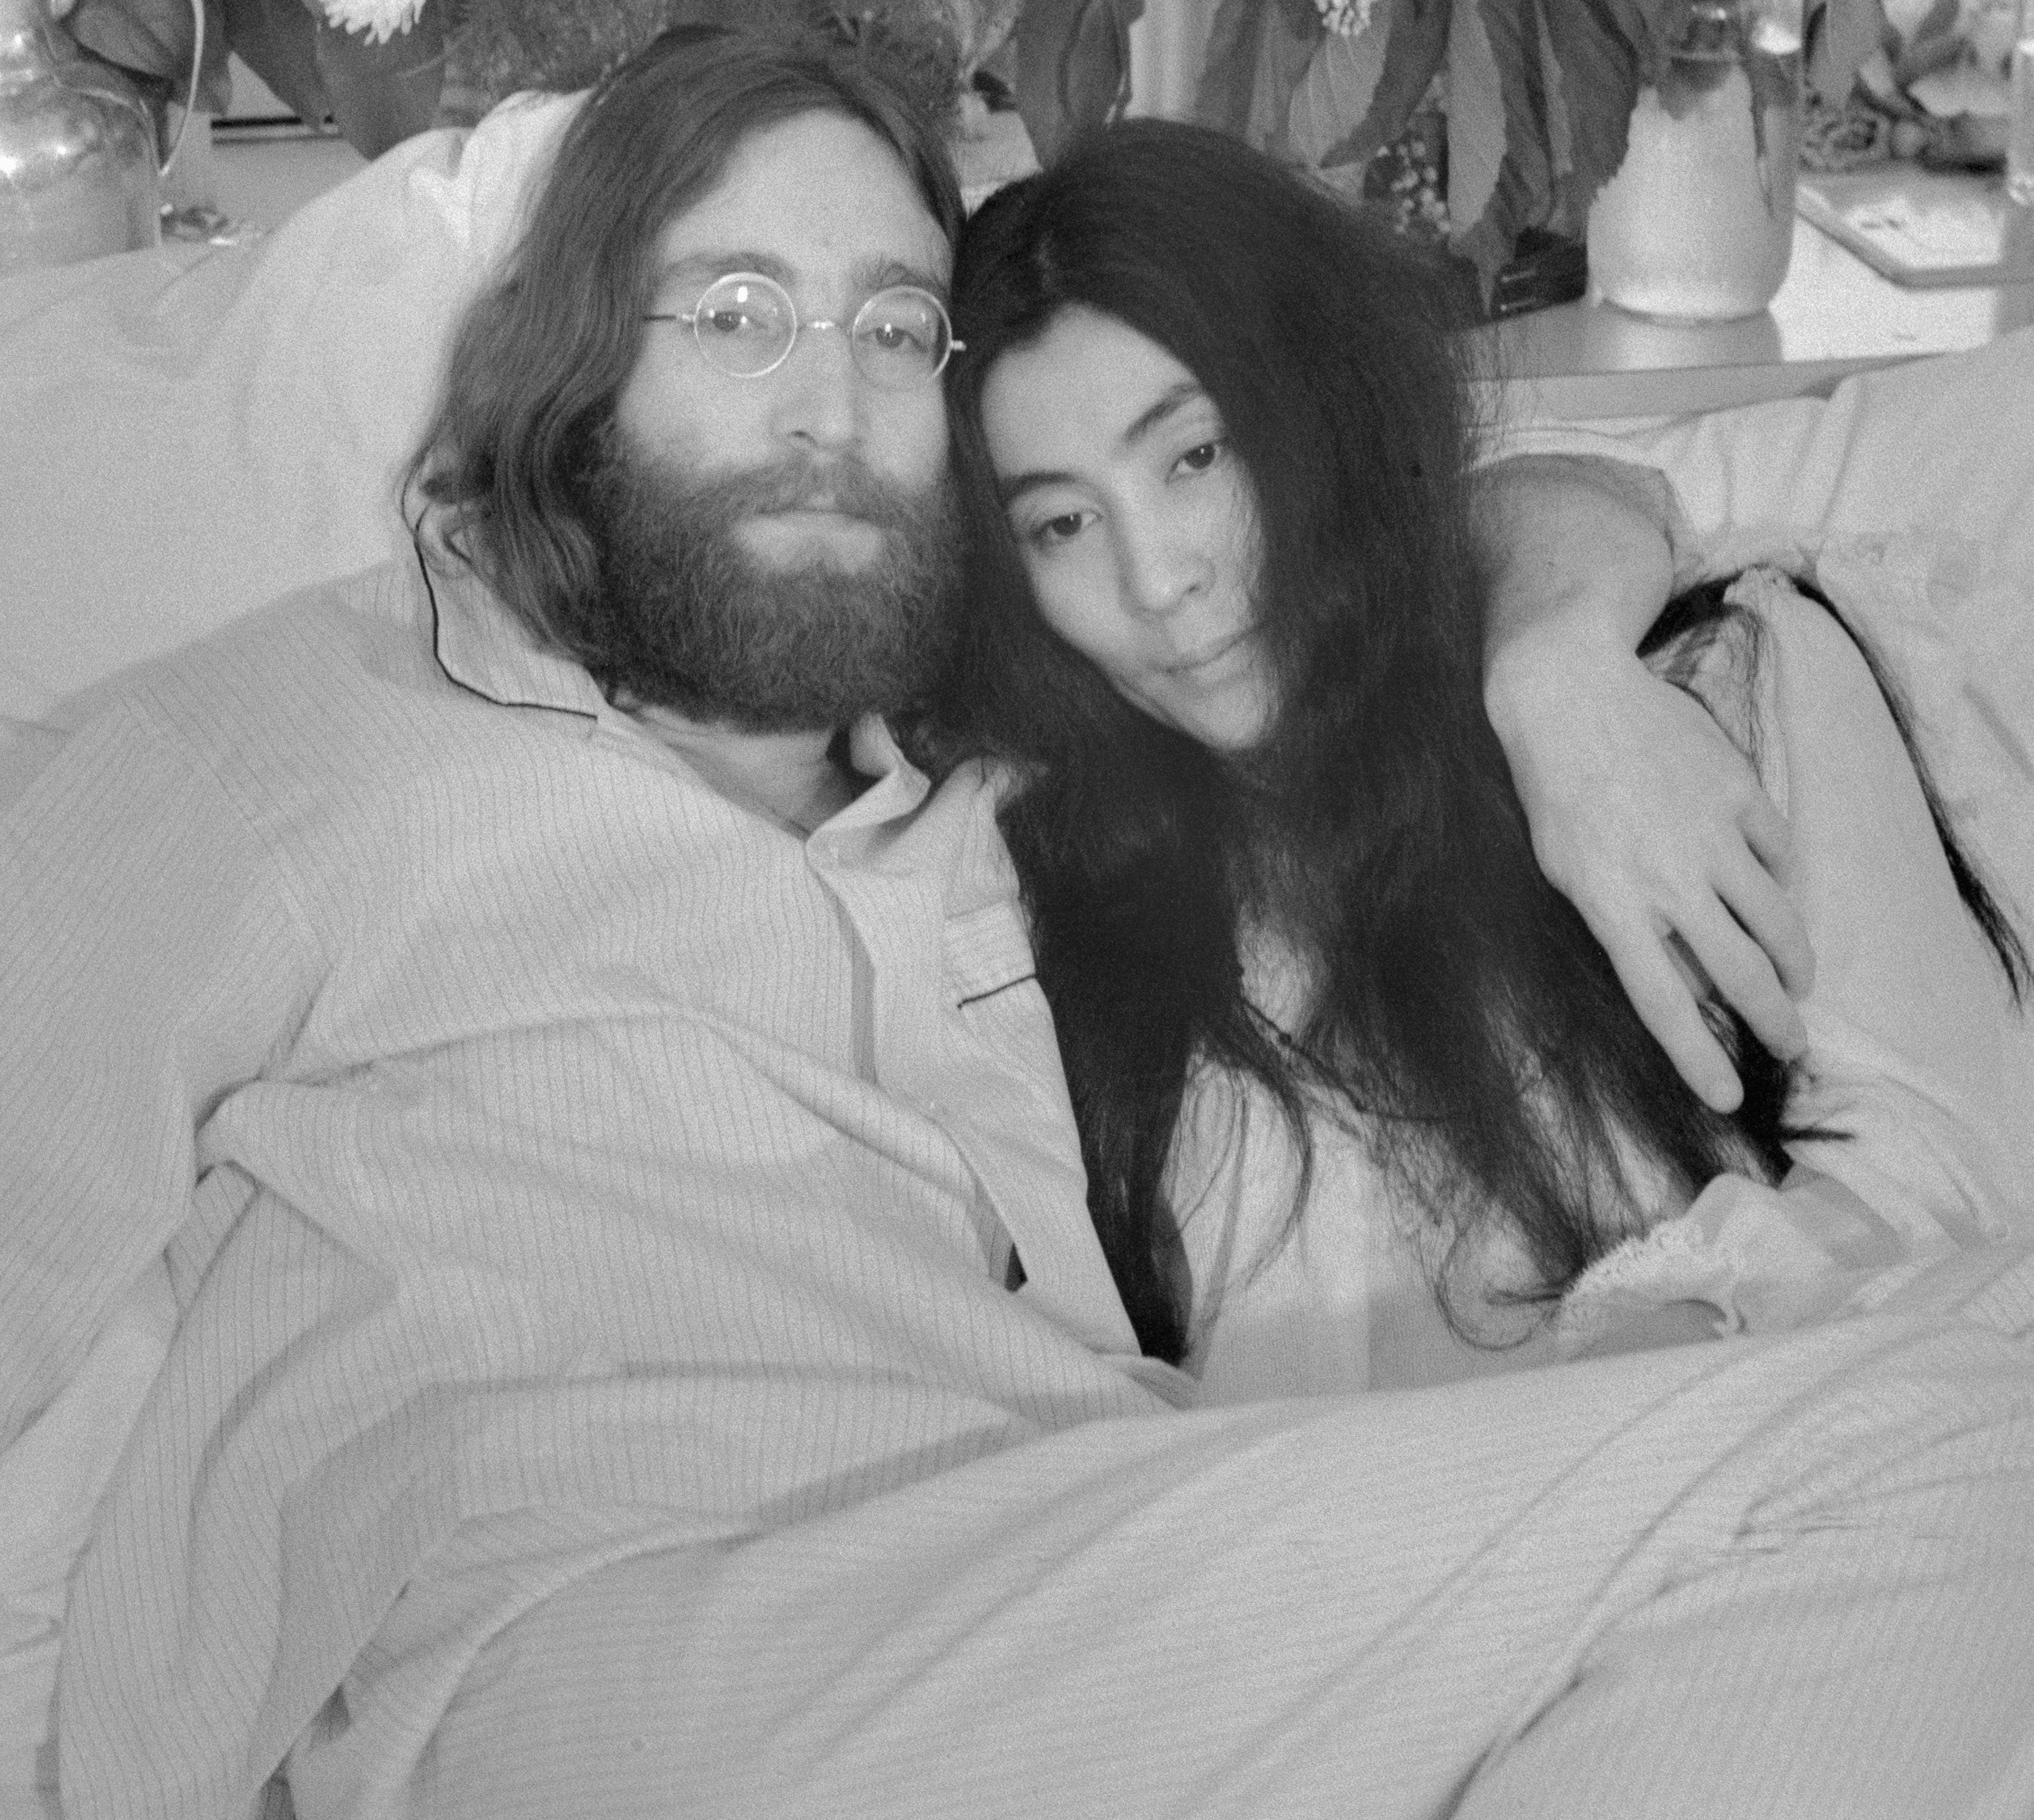 John Lennon and Yoko Ono on a bed